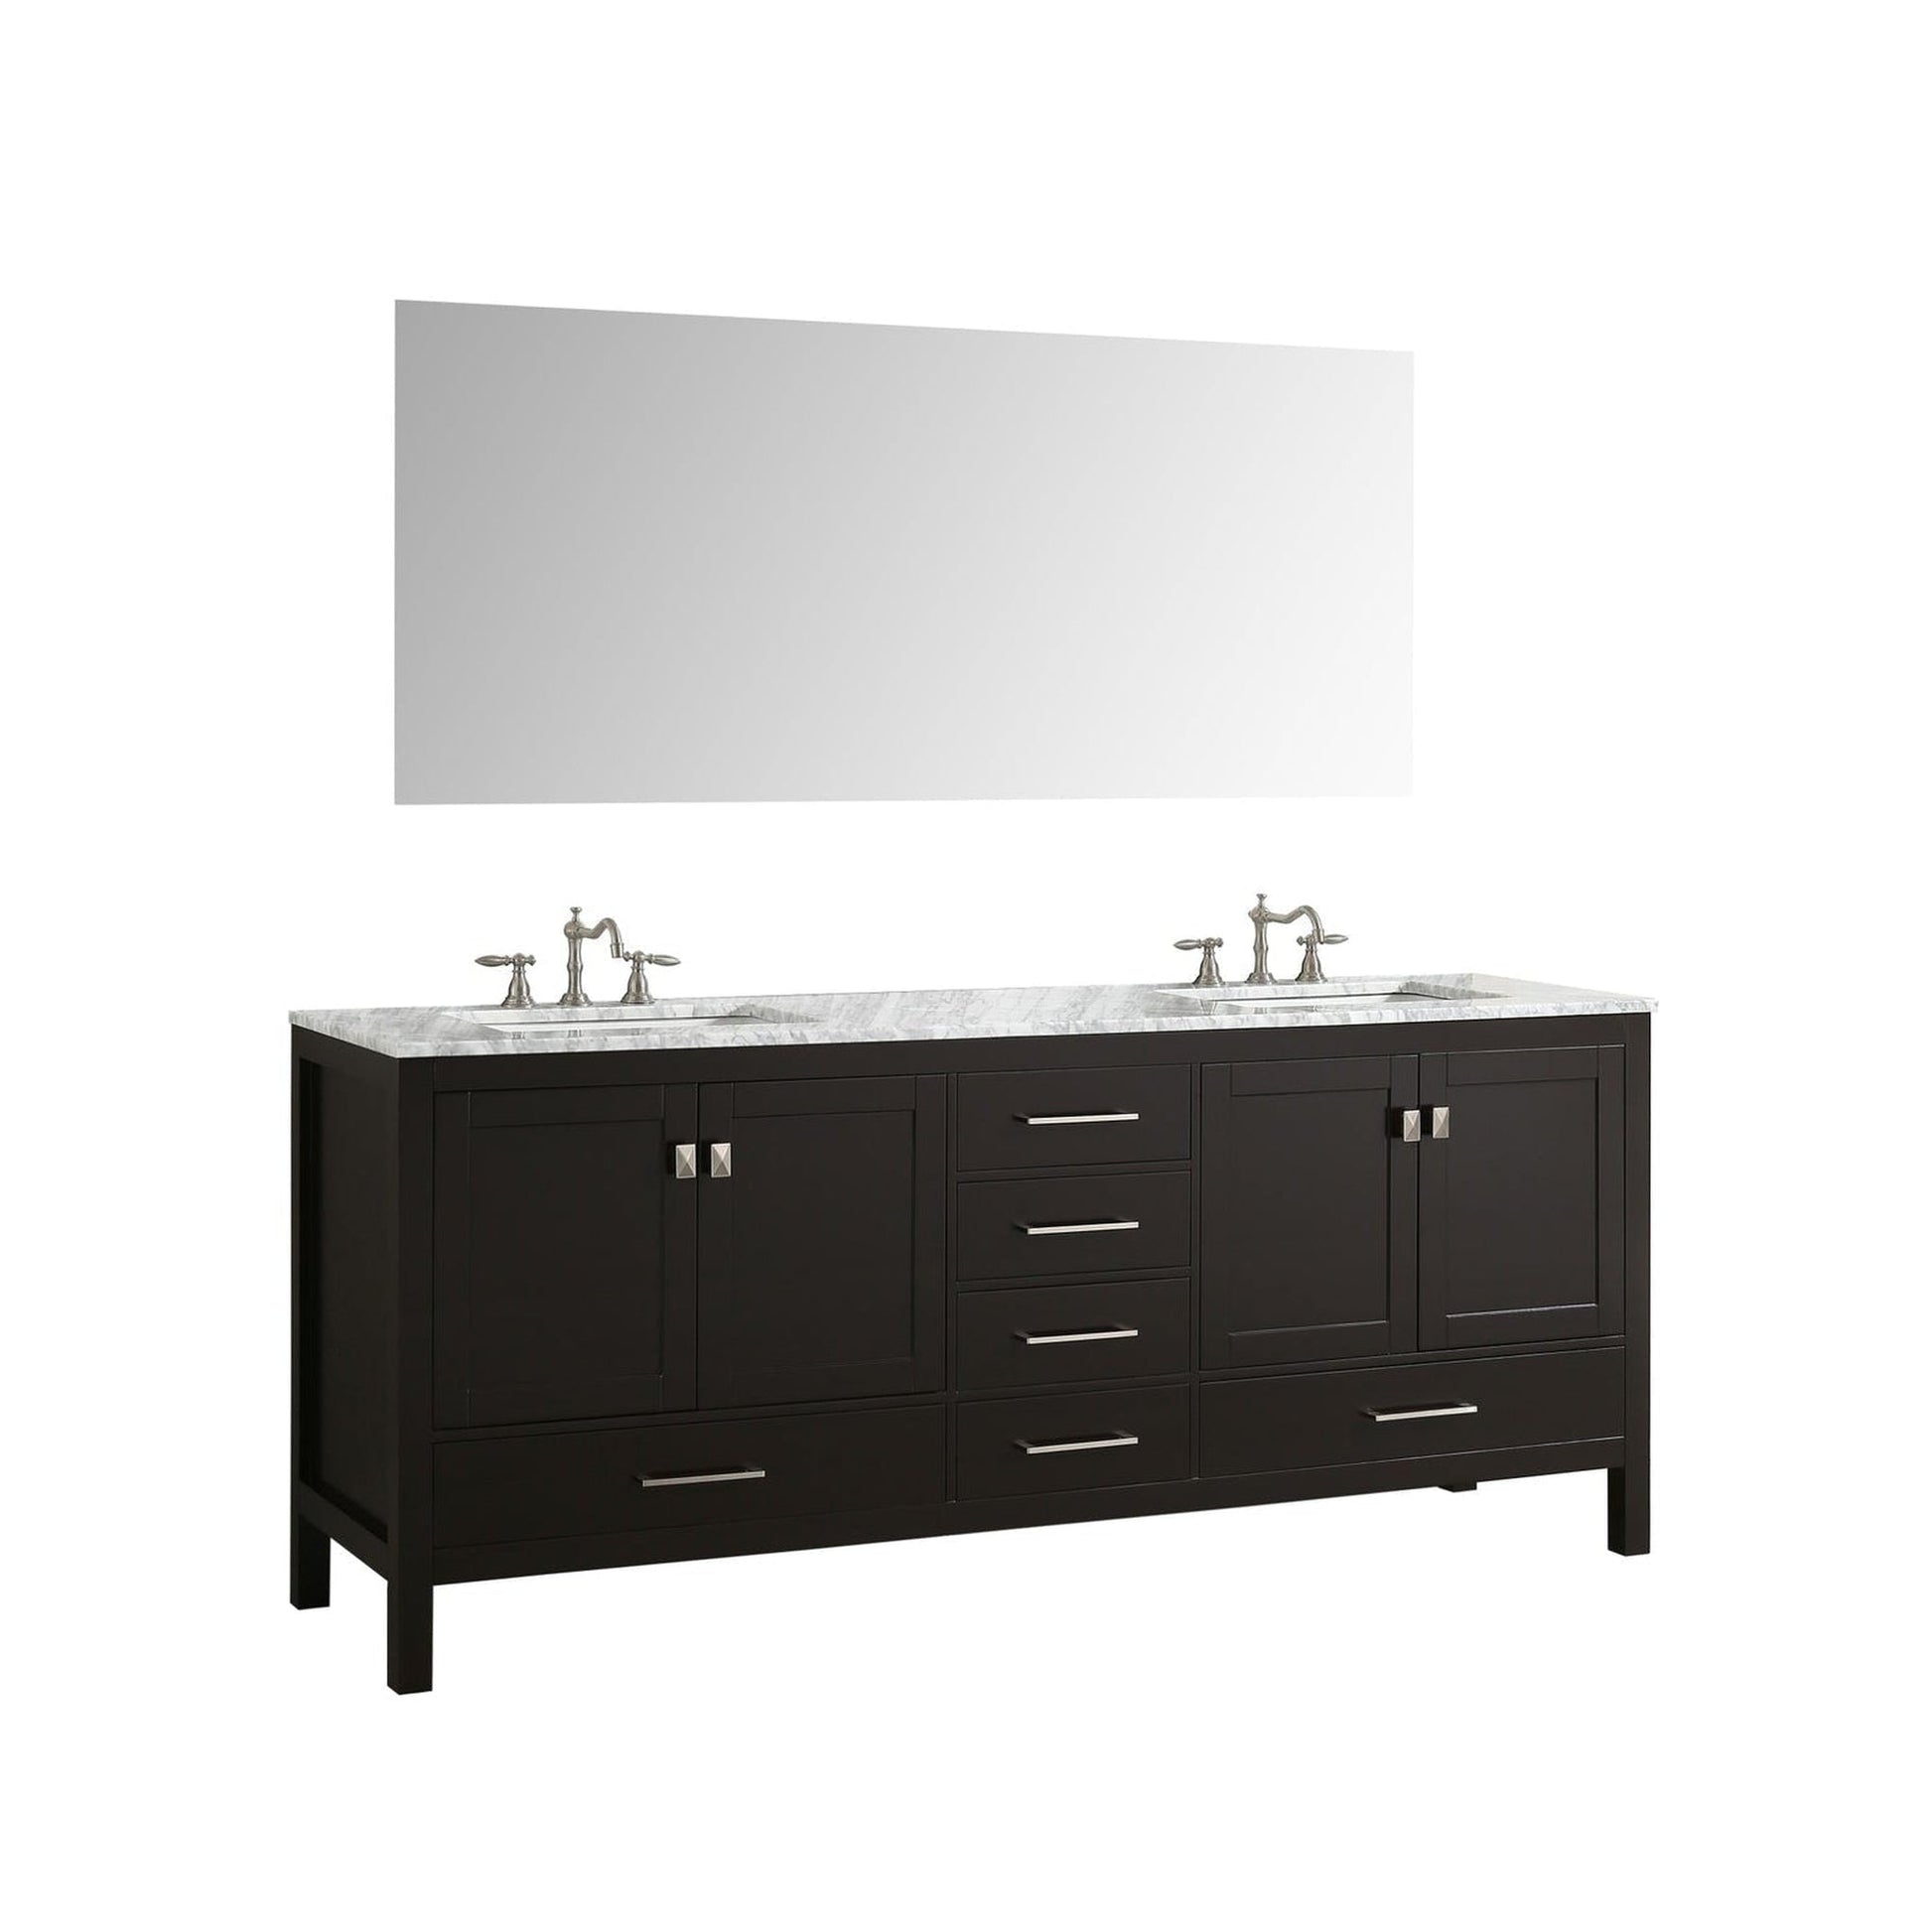 Eviva Aberdeen 60" x 34" Espresso Freestanding Bathroom Vanity With Double Undermount Sink